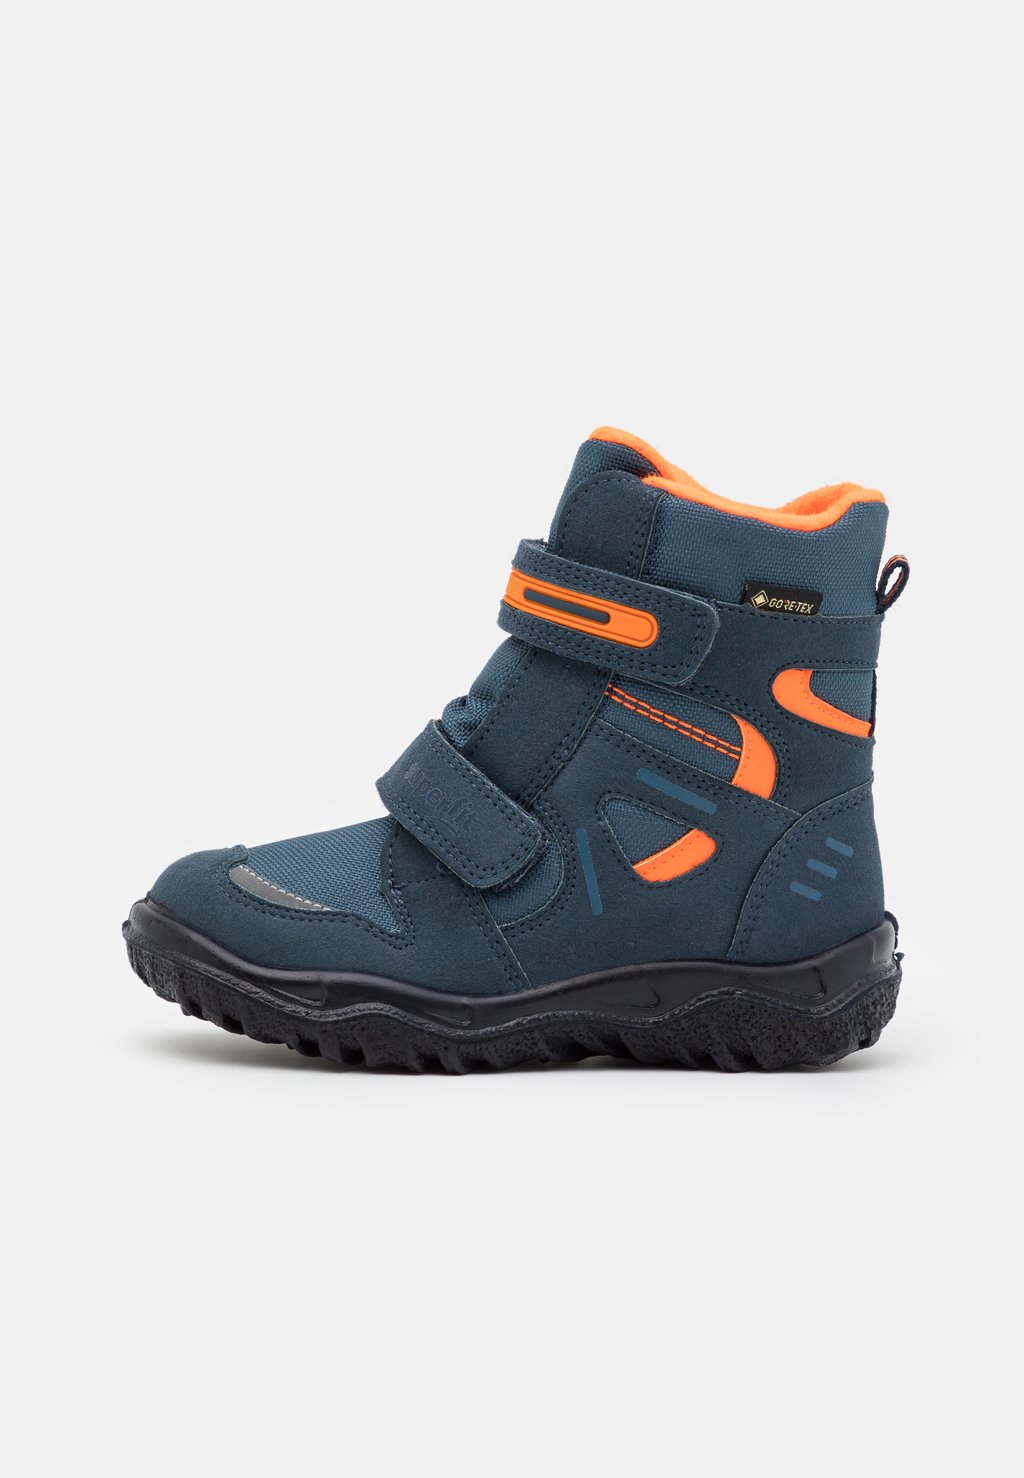 Зимние ботинки/зимние ботинки HUSKY Superfit, цвет blau/orange зимние ботинки зимние ботинки husky superfit цвет blau